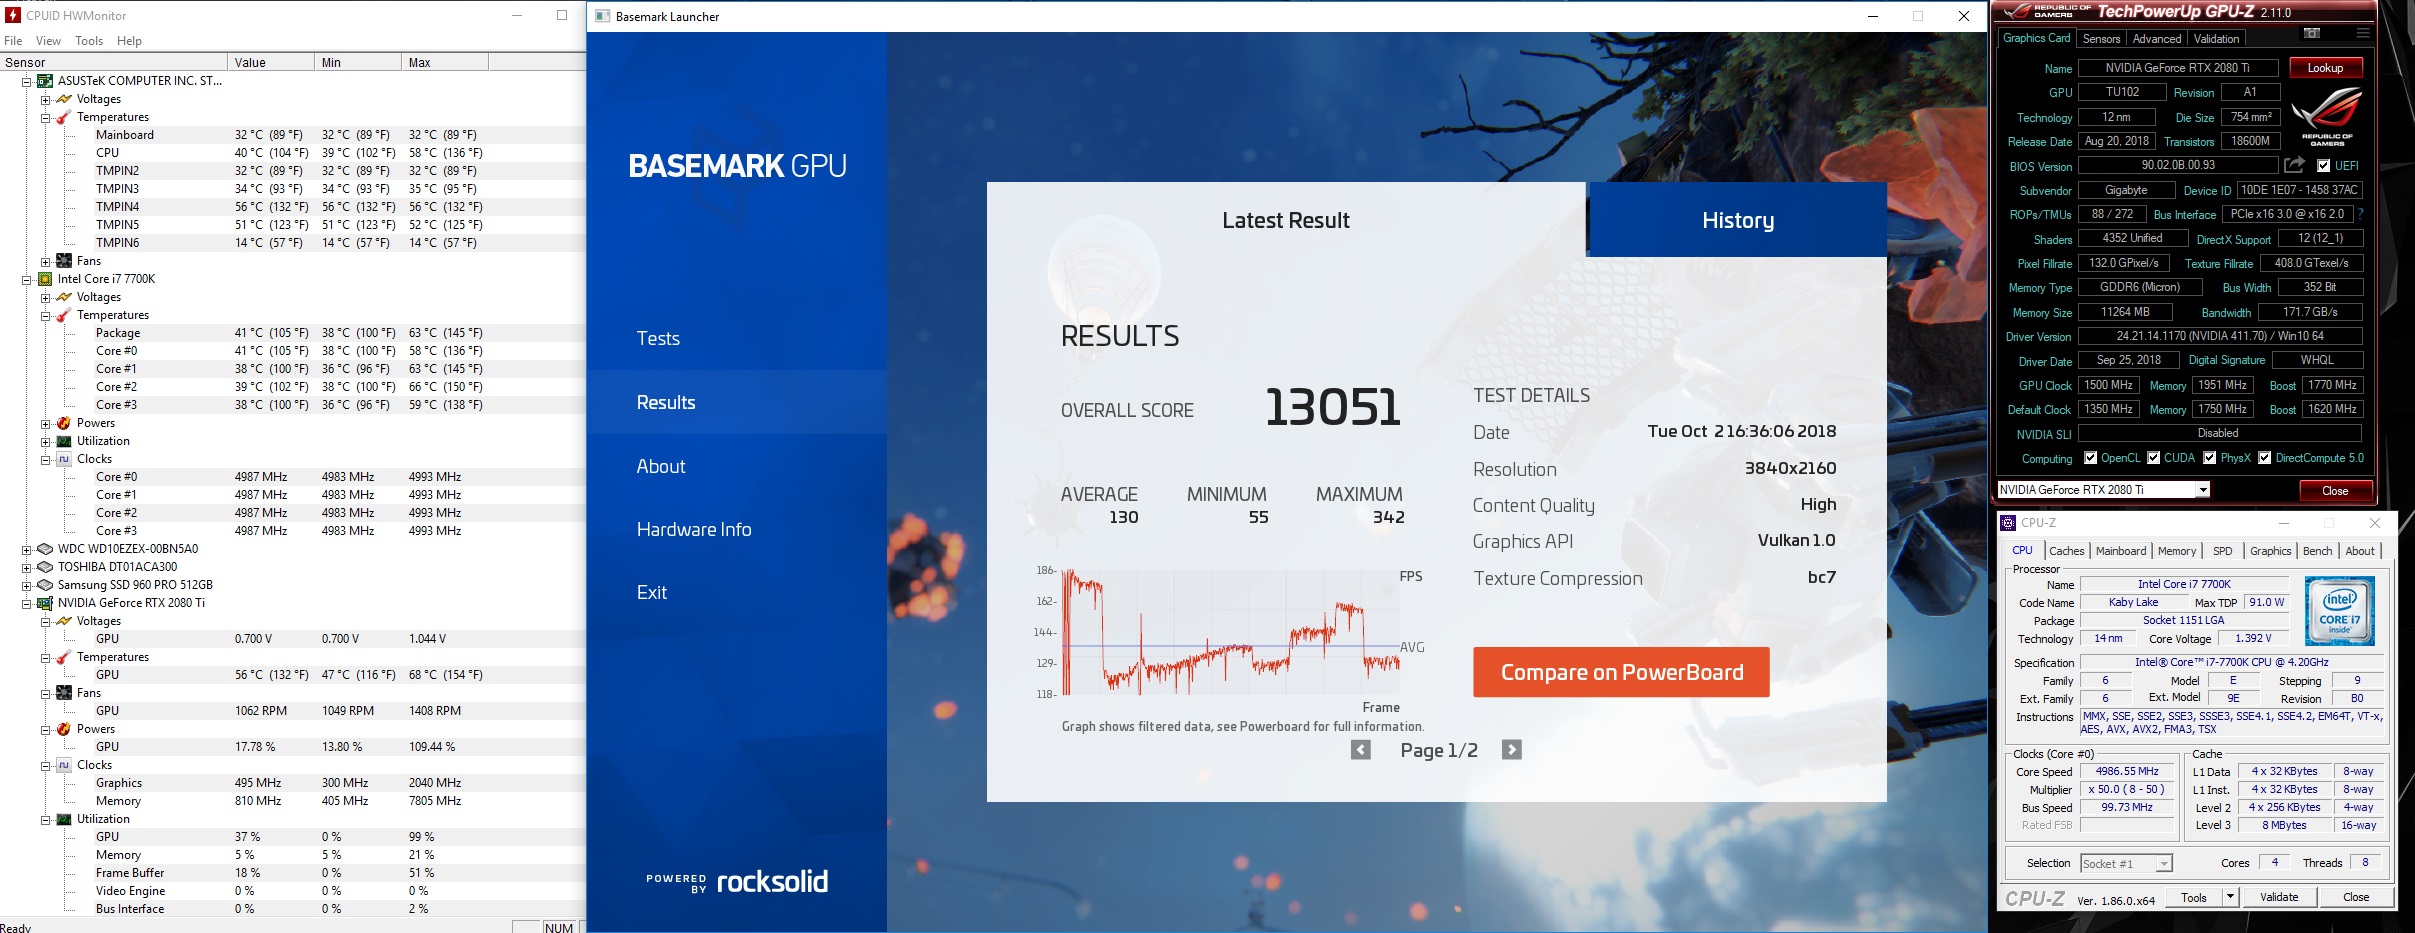 13051 Basemark GPU.jpg